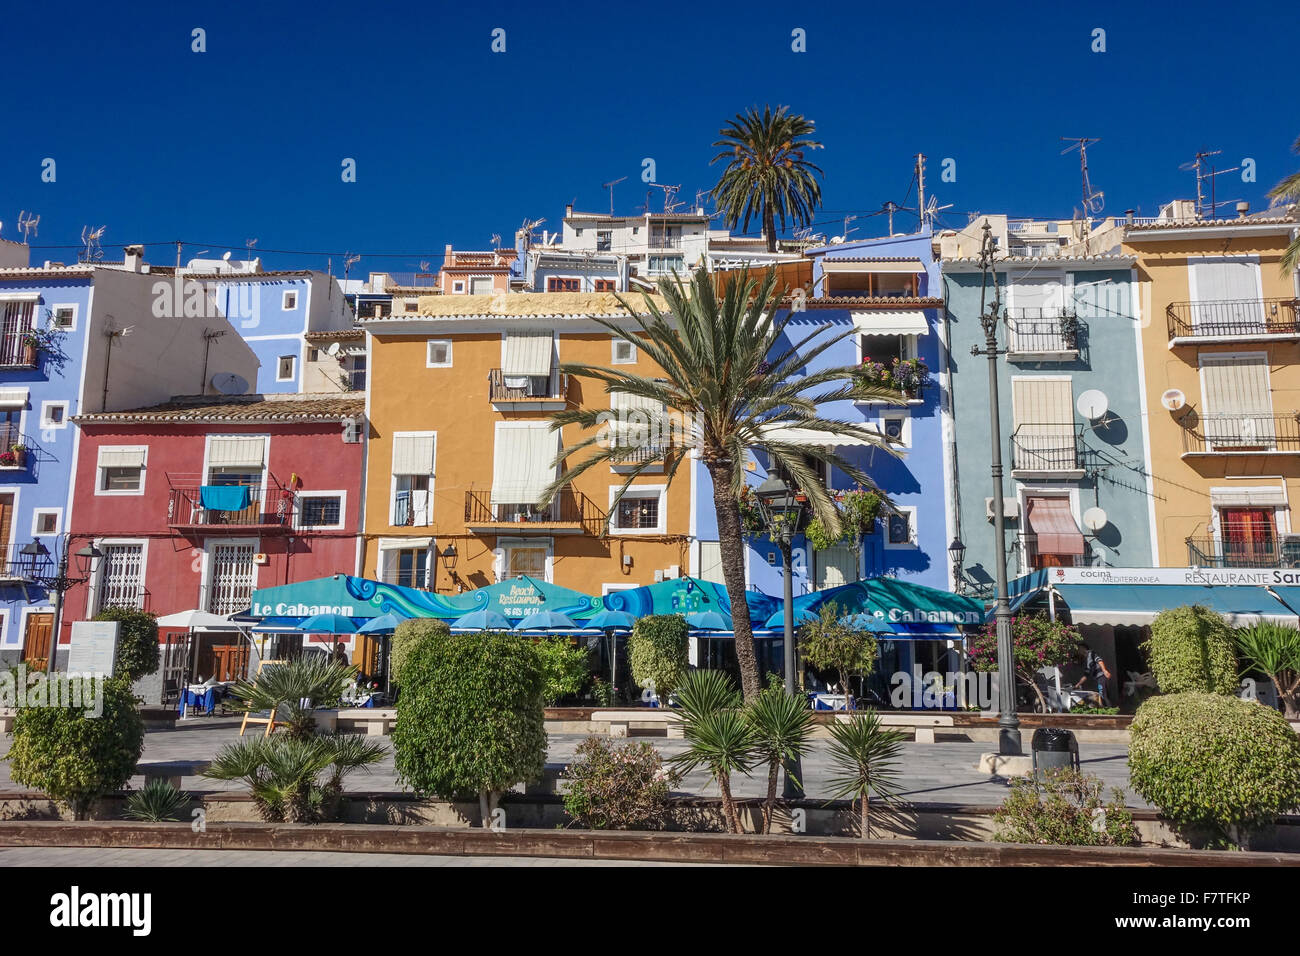 La Vila Joiosa o Villajoyosa, Alicante, Spagna. Un resort costiero con coloratissime case di pescatori tumbling giù per le spiagge dorate Foto Stock